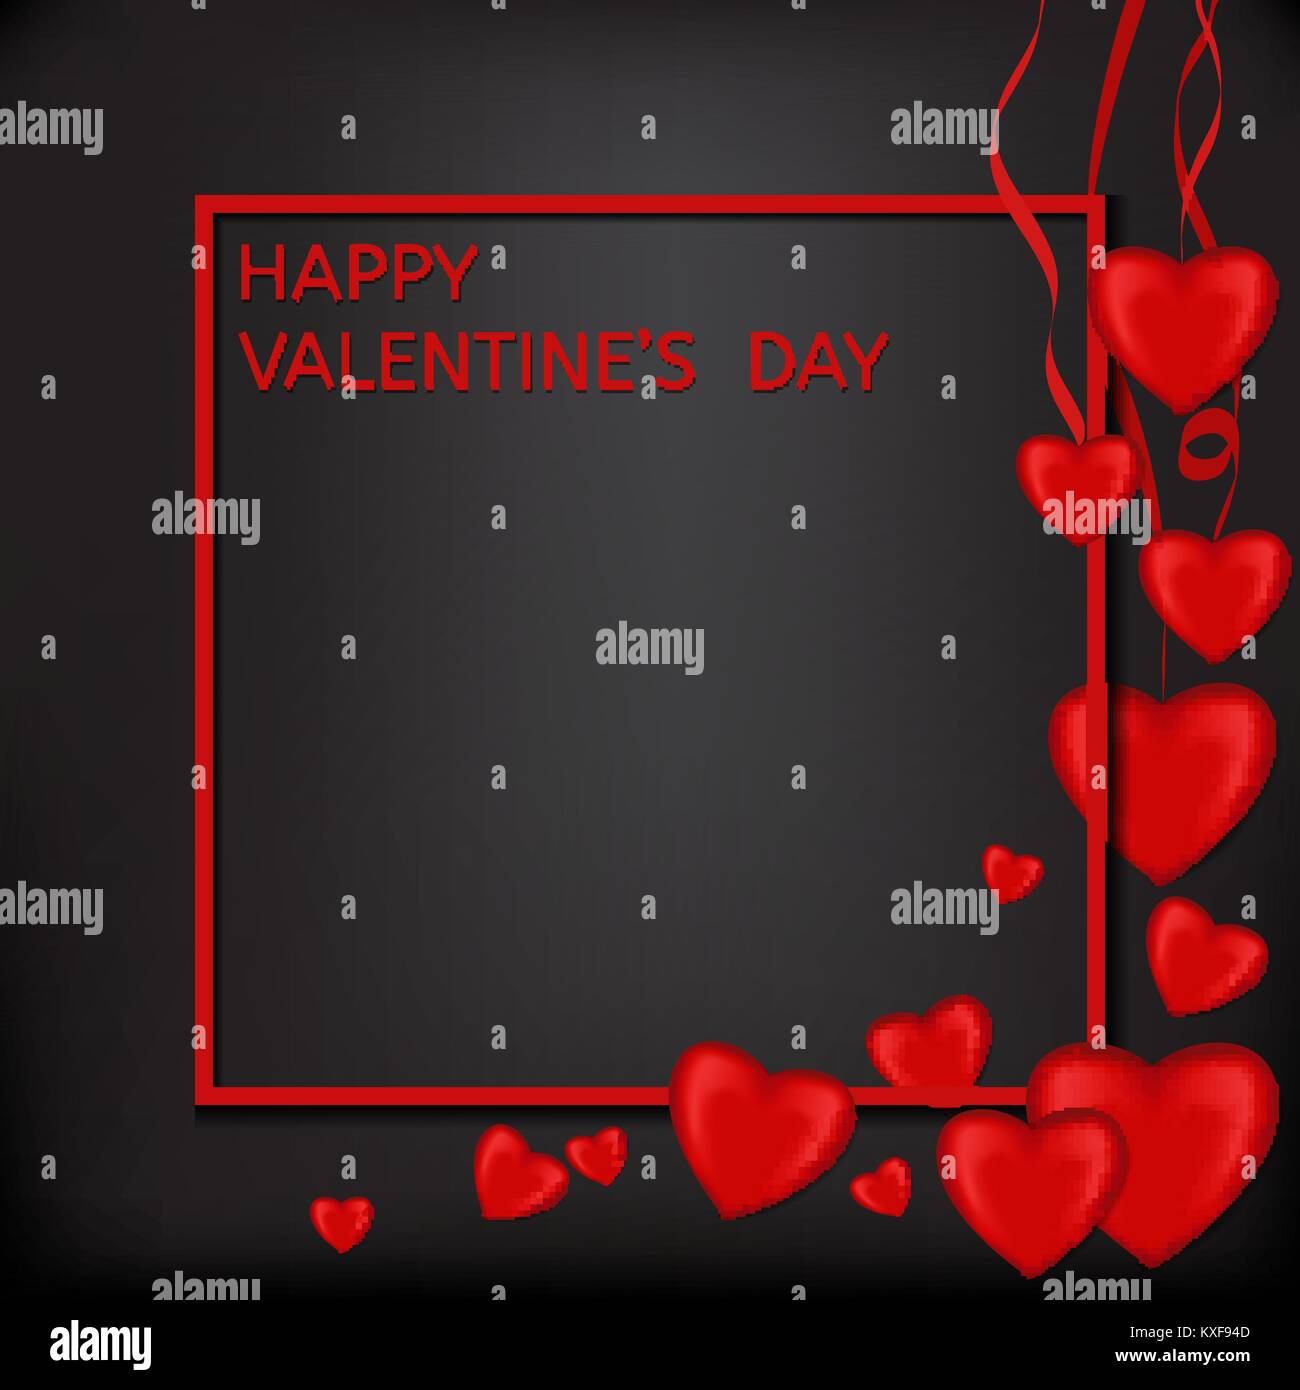 Thẻ Valentine với hình trái tim đỏ và nền đen không chỉ là một món quà tuyệt vời trong ngày lễ tình yêu mà còn là một cơ hội để bạn trao đi những lời yêu thương sâu sắc nhất đến người mình yêu.